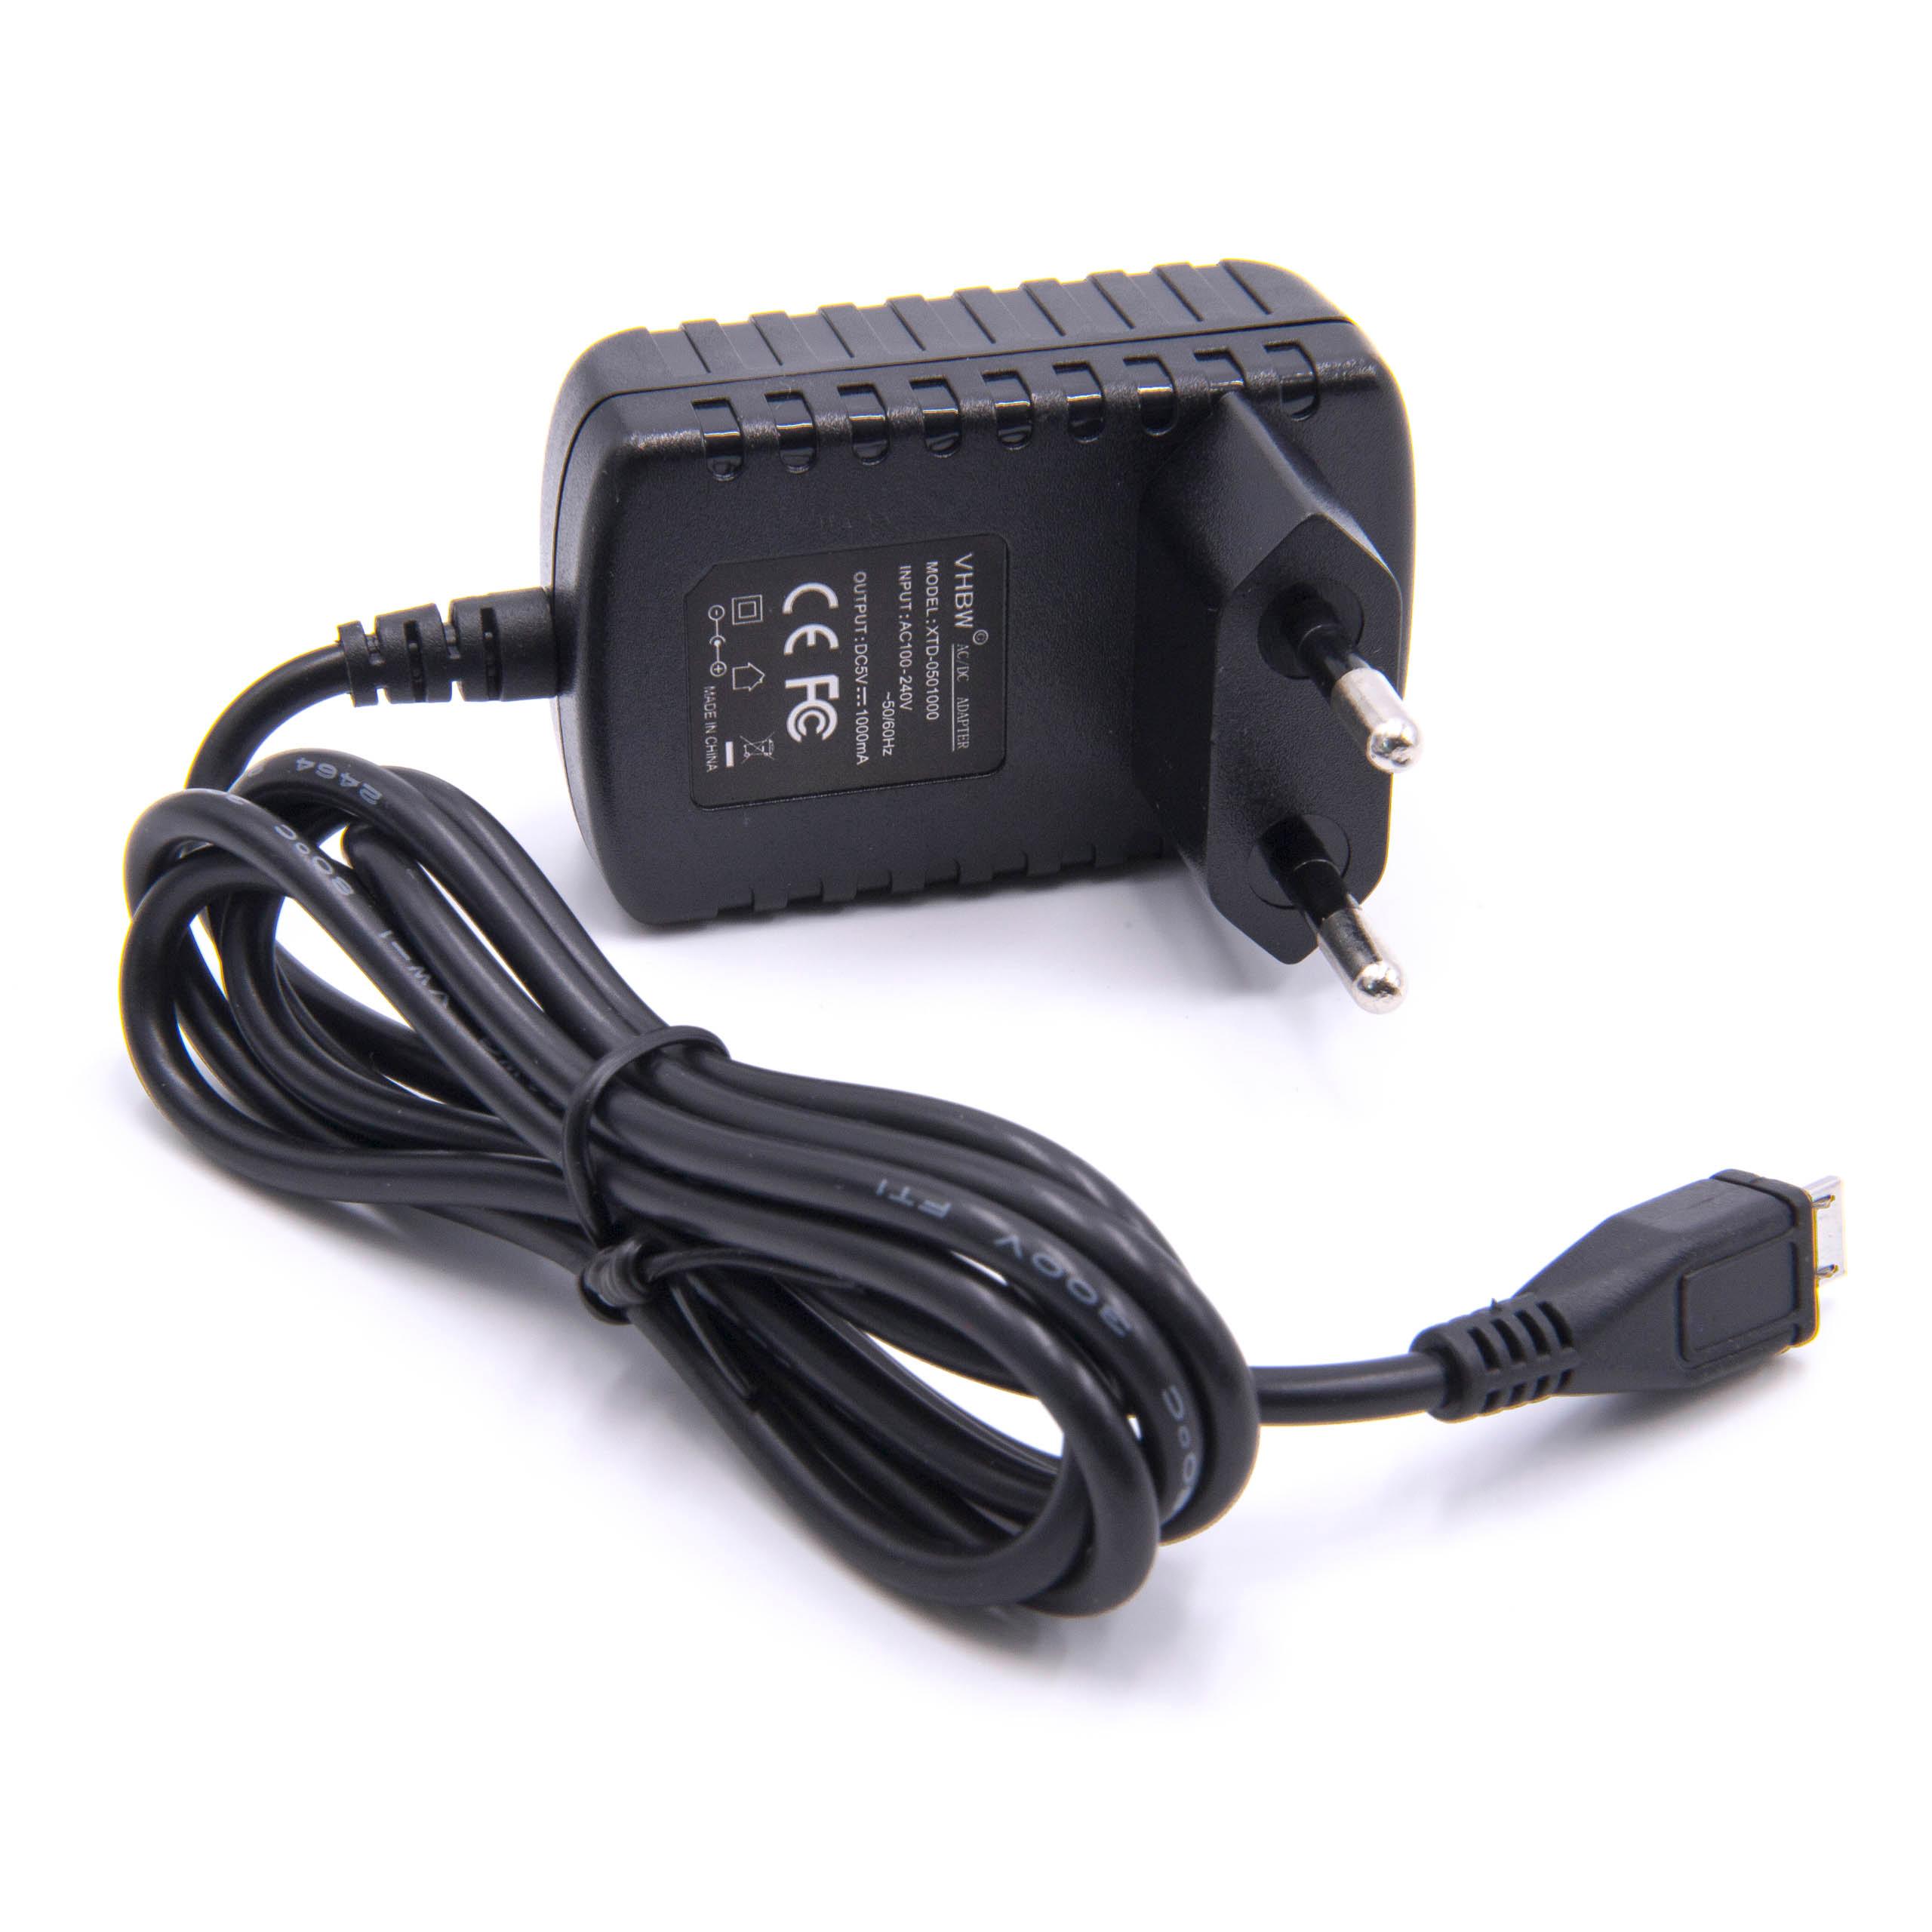 Caricabatterie 110-220 V per Bose, Motorola Soundlink Mini 2cellulare, altoparlante ecc - Micro USB